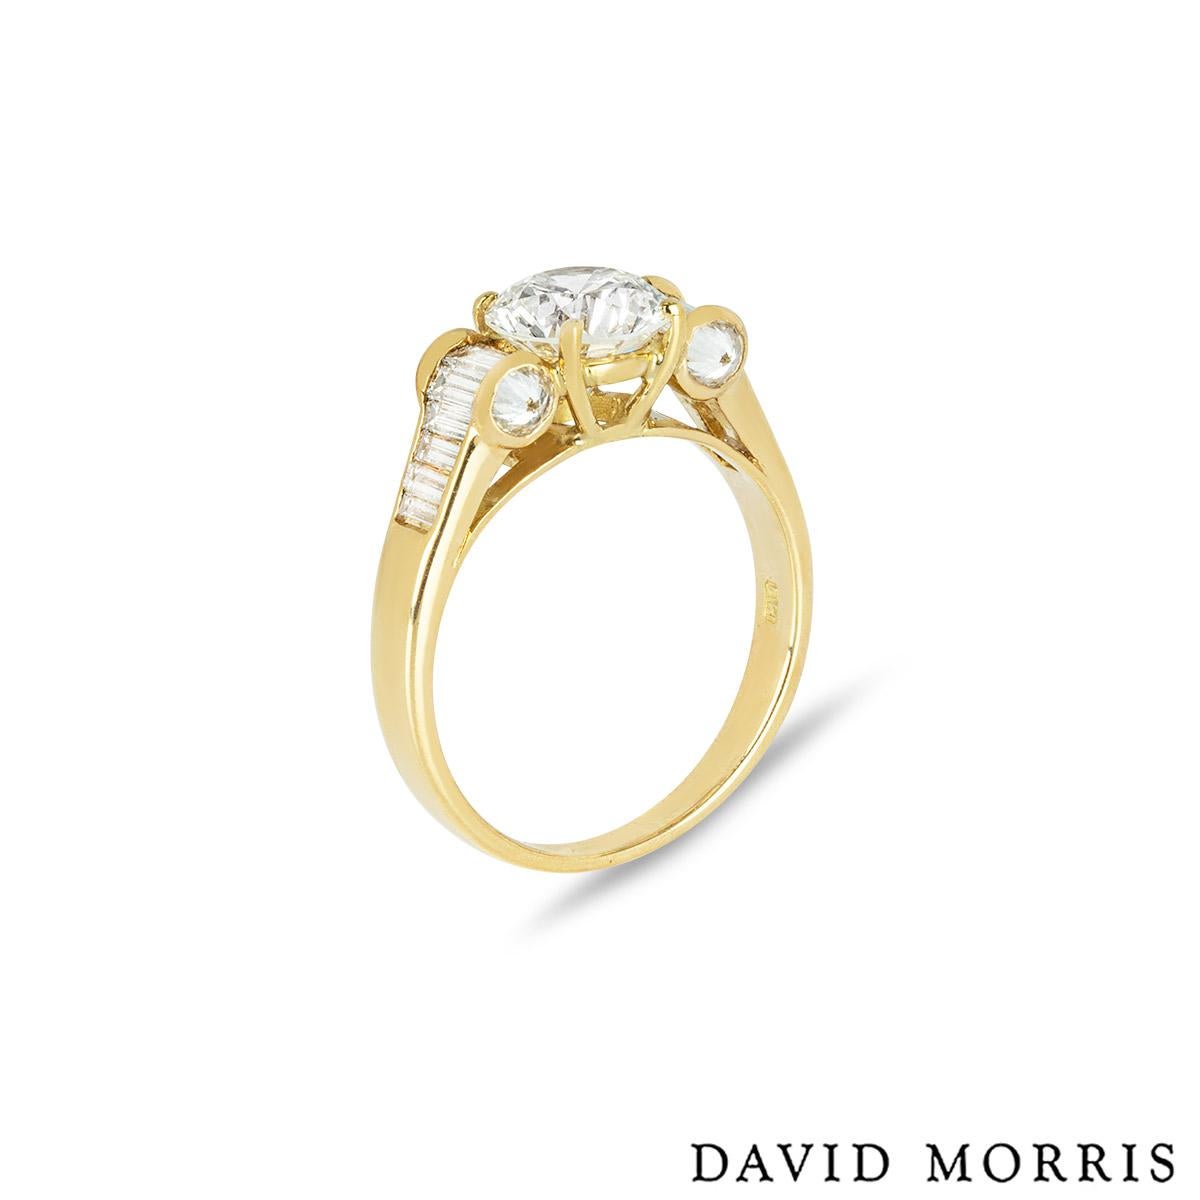 Une bague en diamant en or jaune 18k par David Morris. La bague est ornée d'un diamant rond de taille brillant au centre, d'un poids de 1,40 ct, de couleur H et de pureté VS1. La bague comporte 7 diamants taille baguette de part et d'autre du